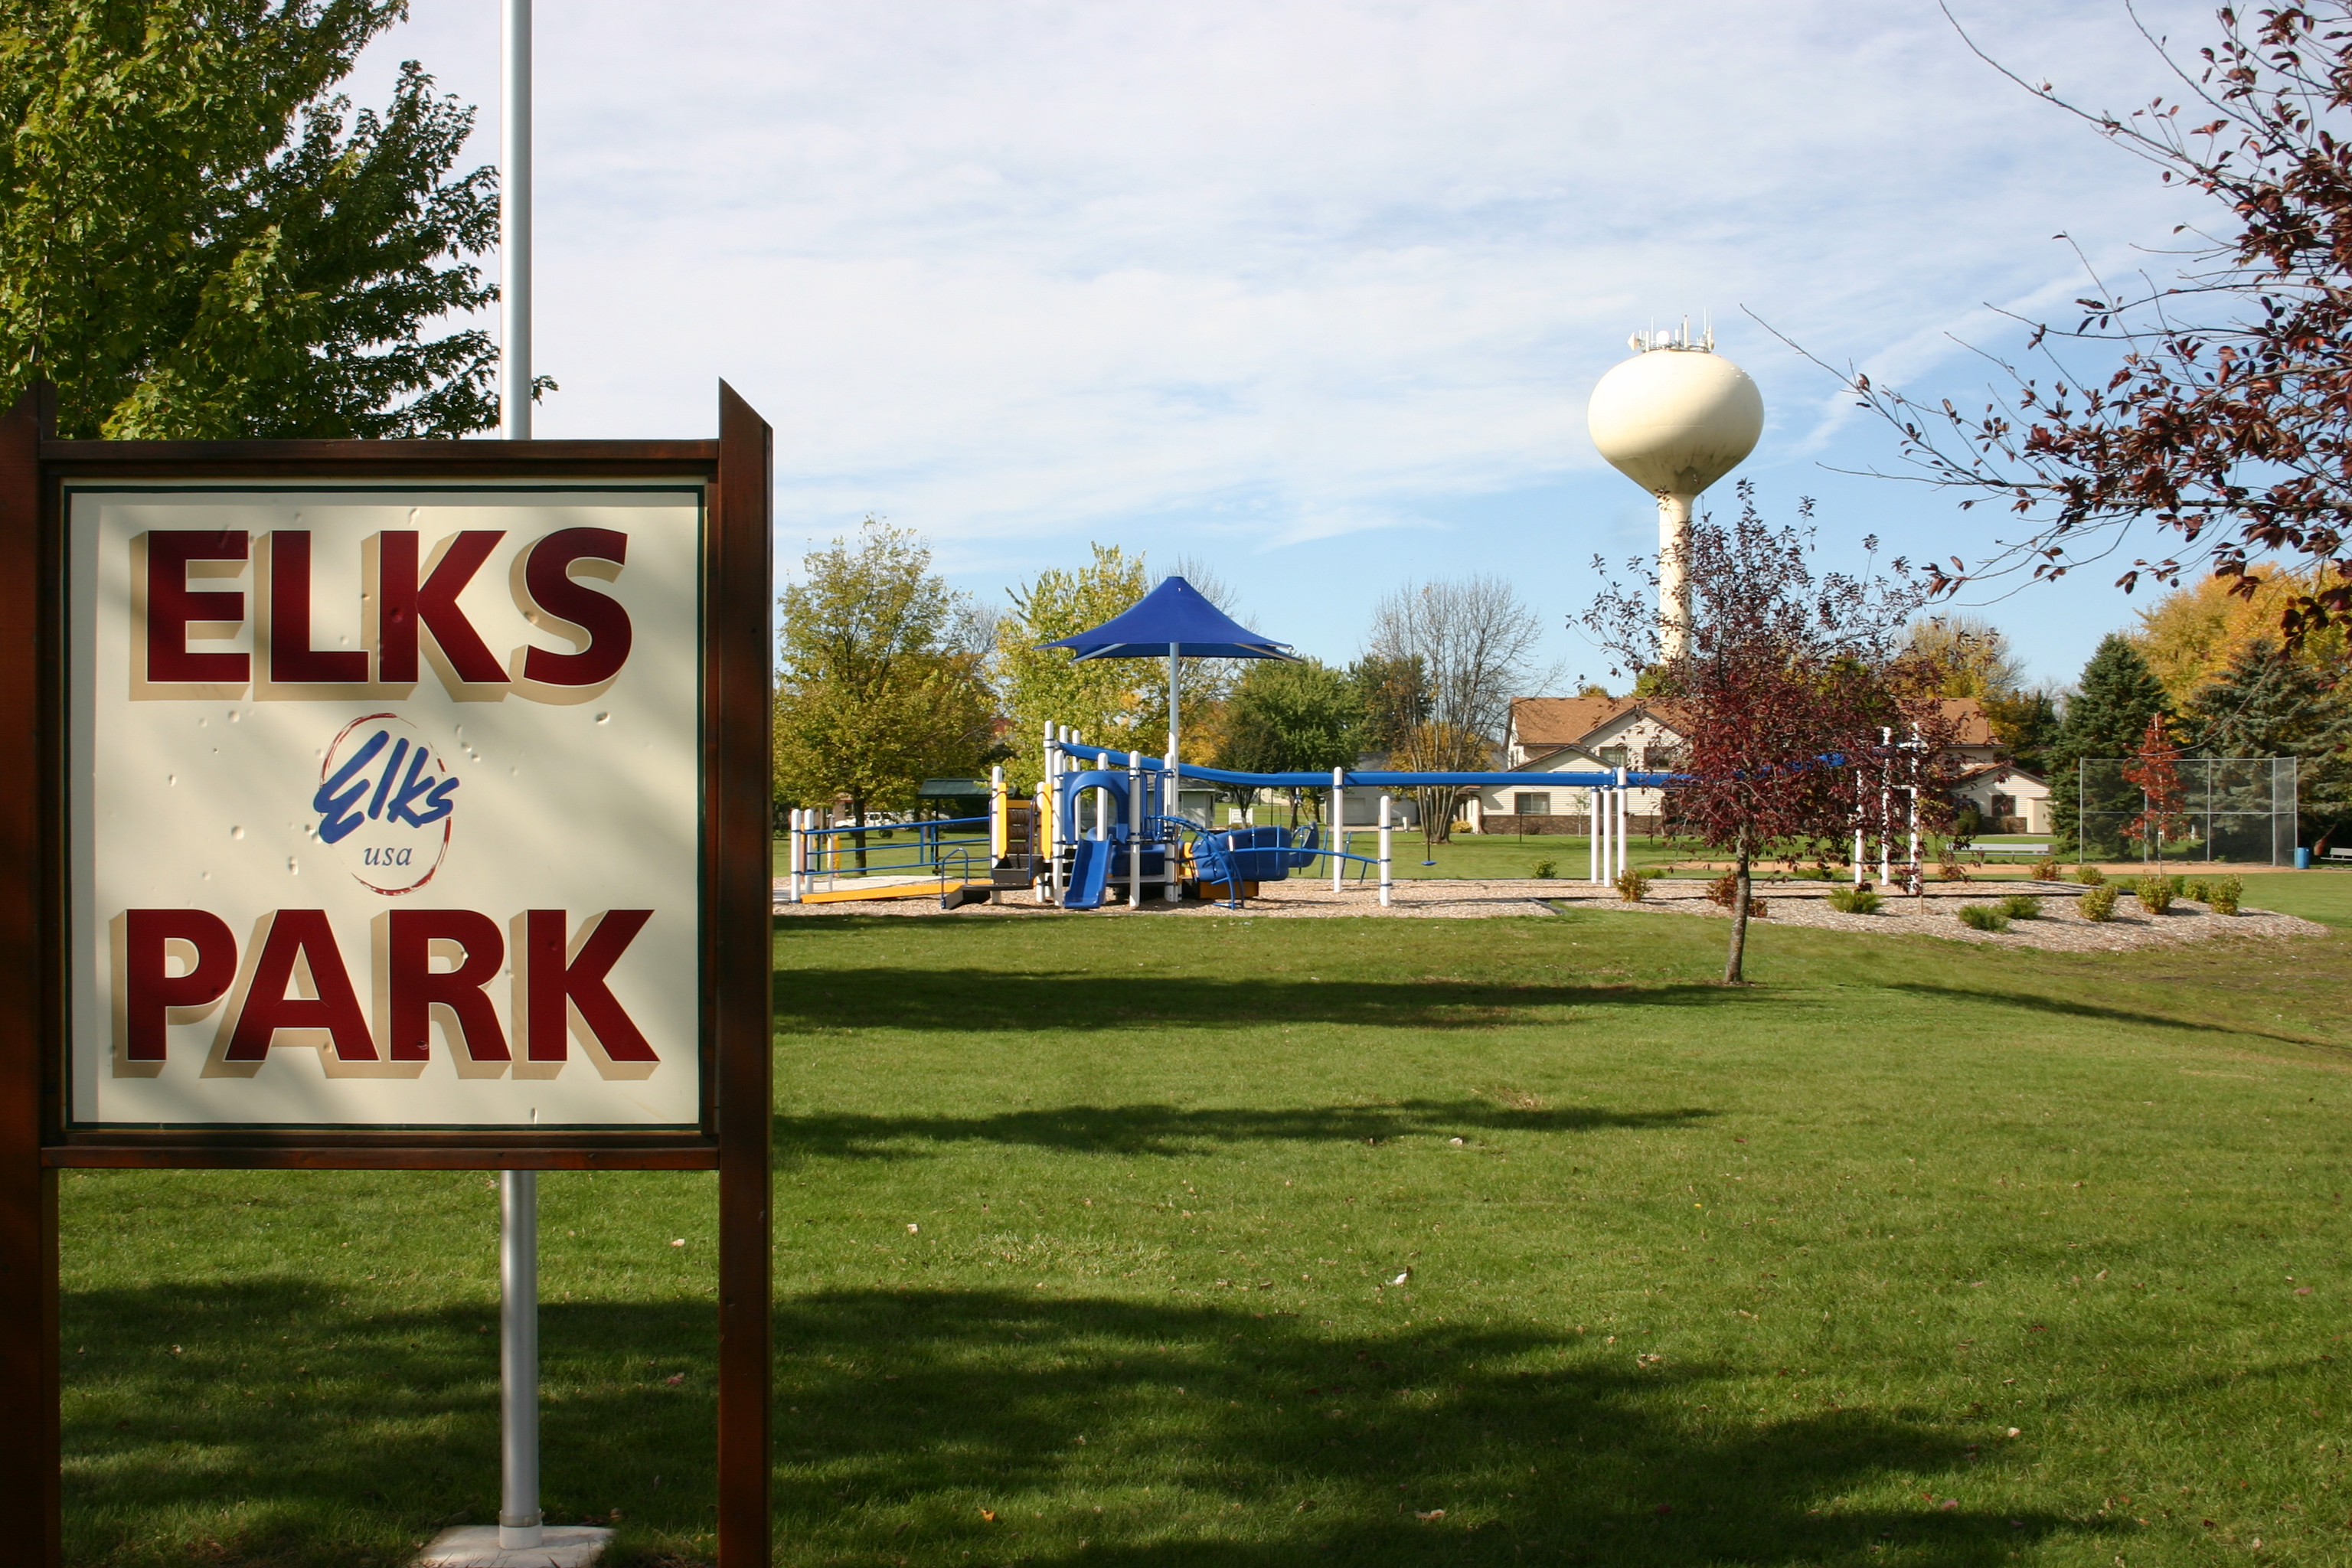 Elk park sign